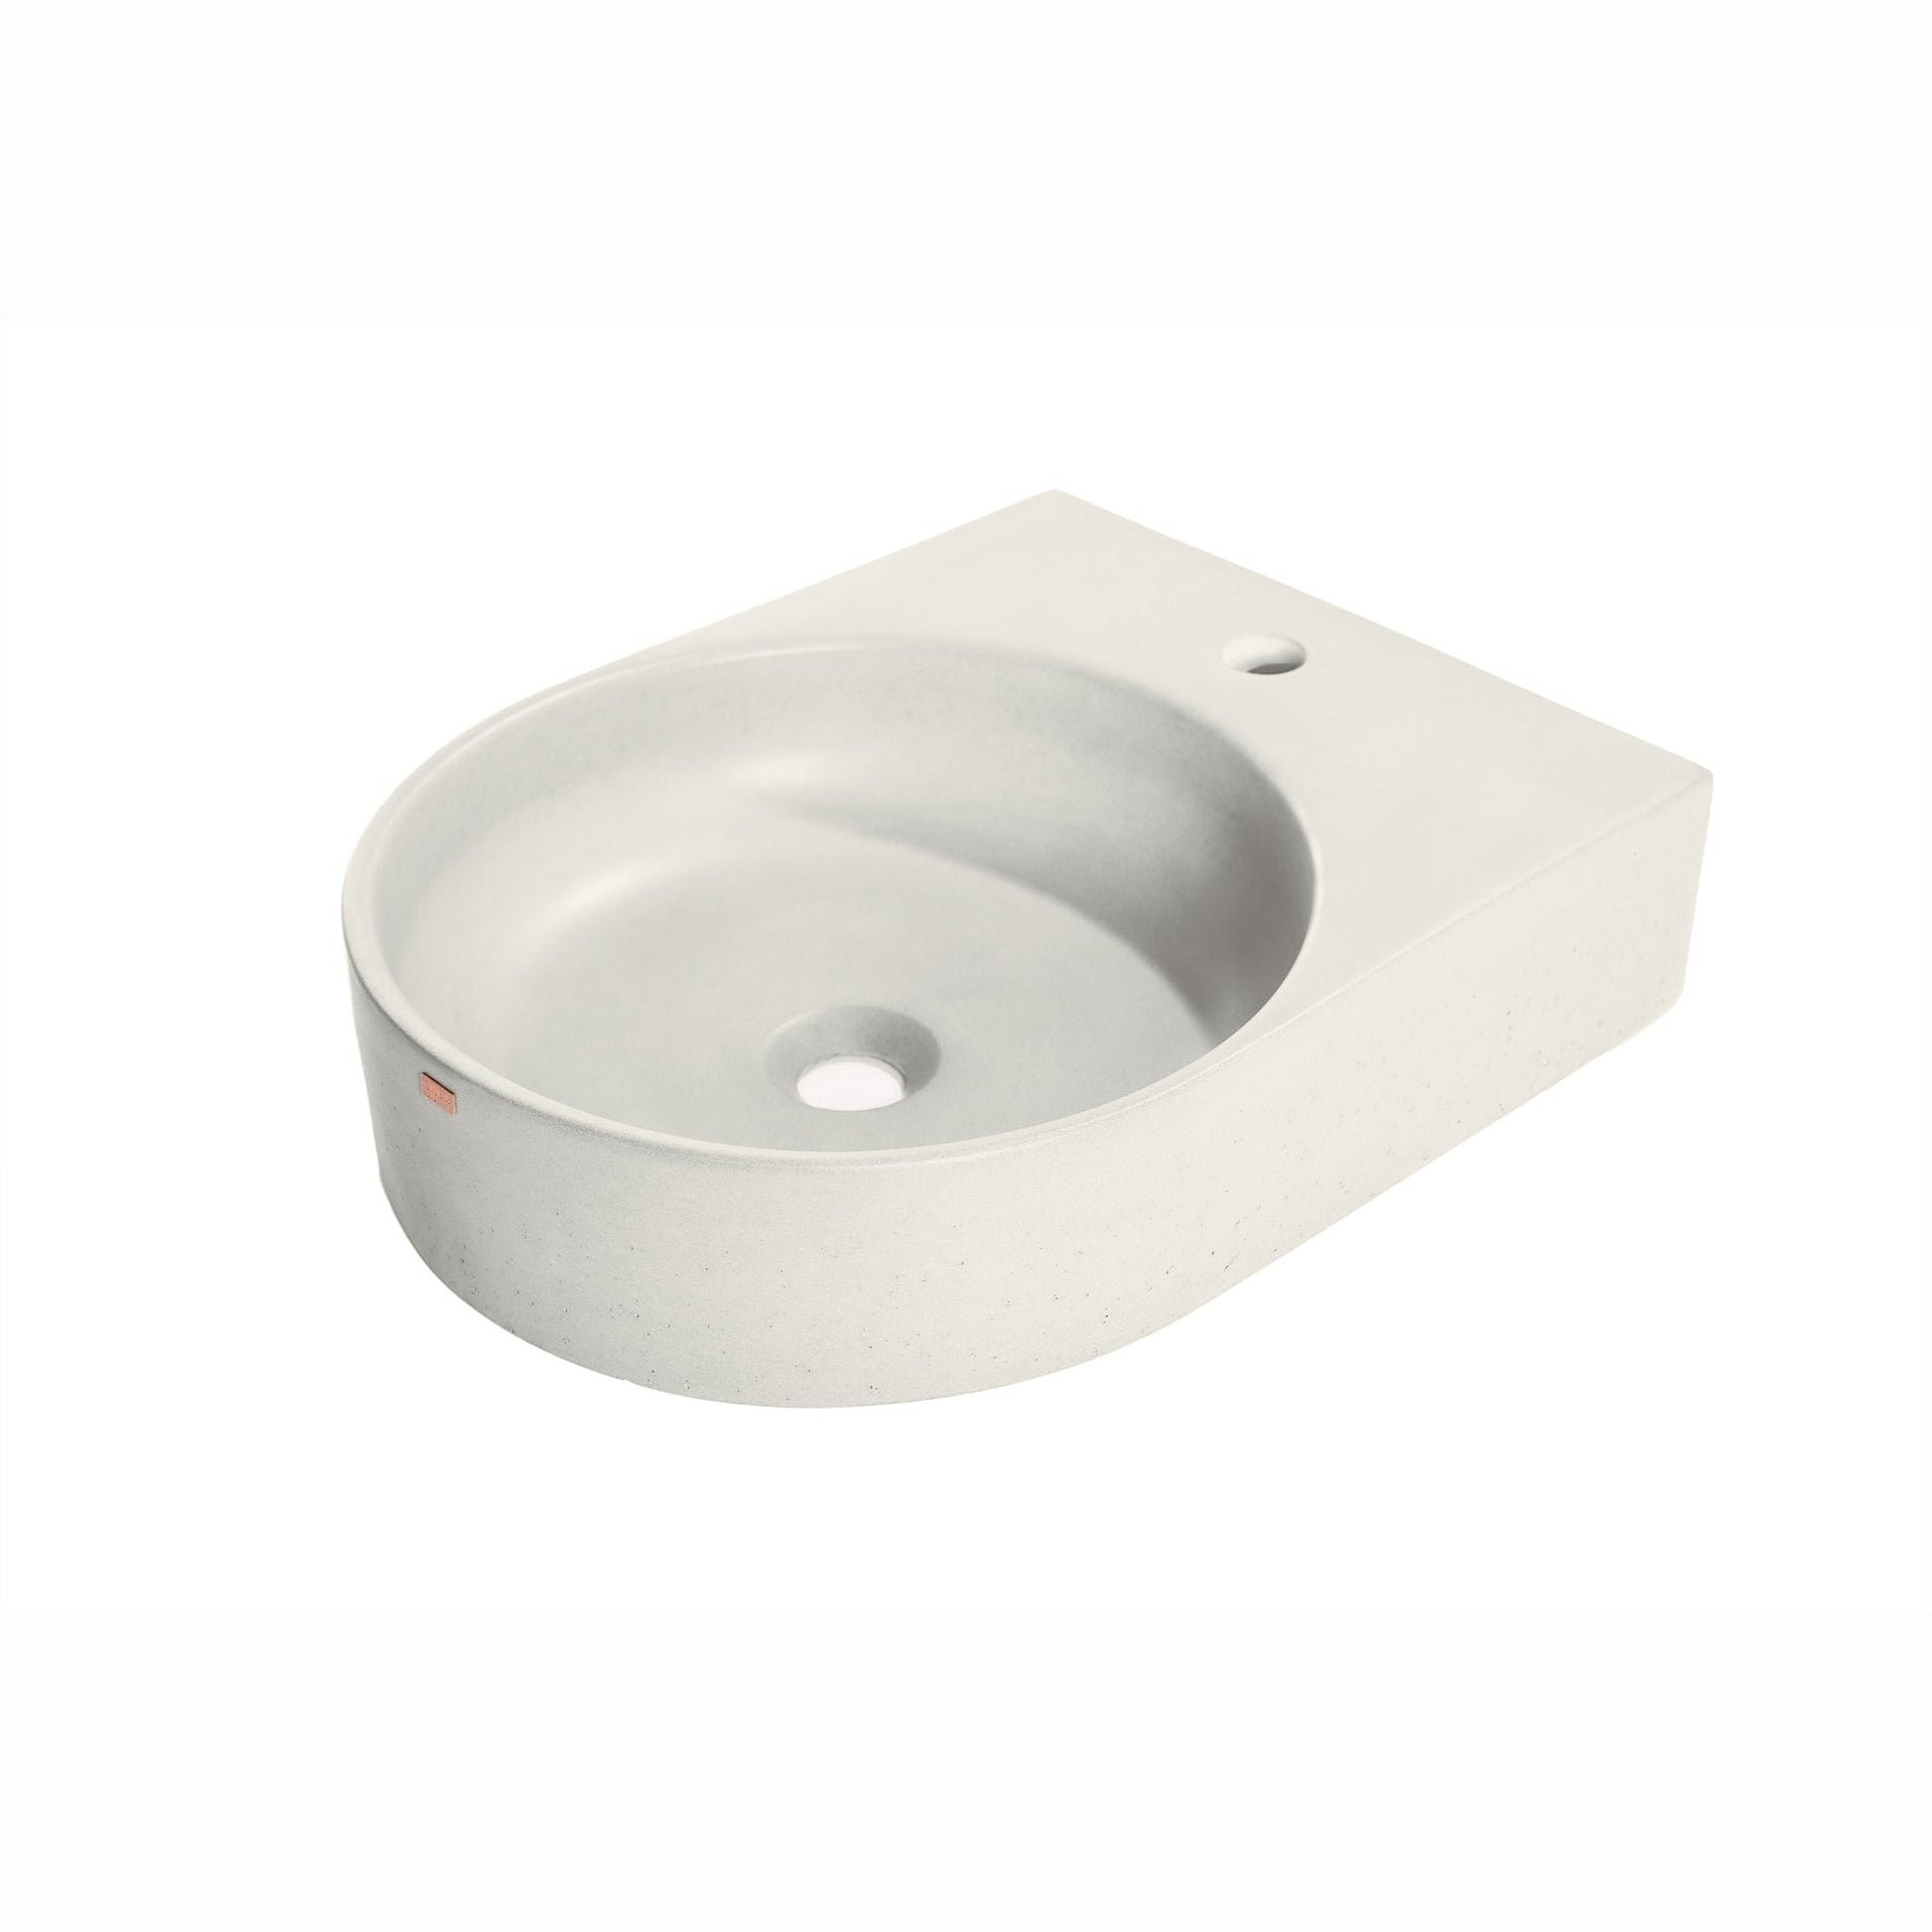 Konkretus Bahia01 15" Shadow Gray Wall-Mounted Round Vessel Concrete Bathroom Sink